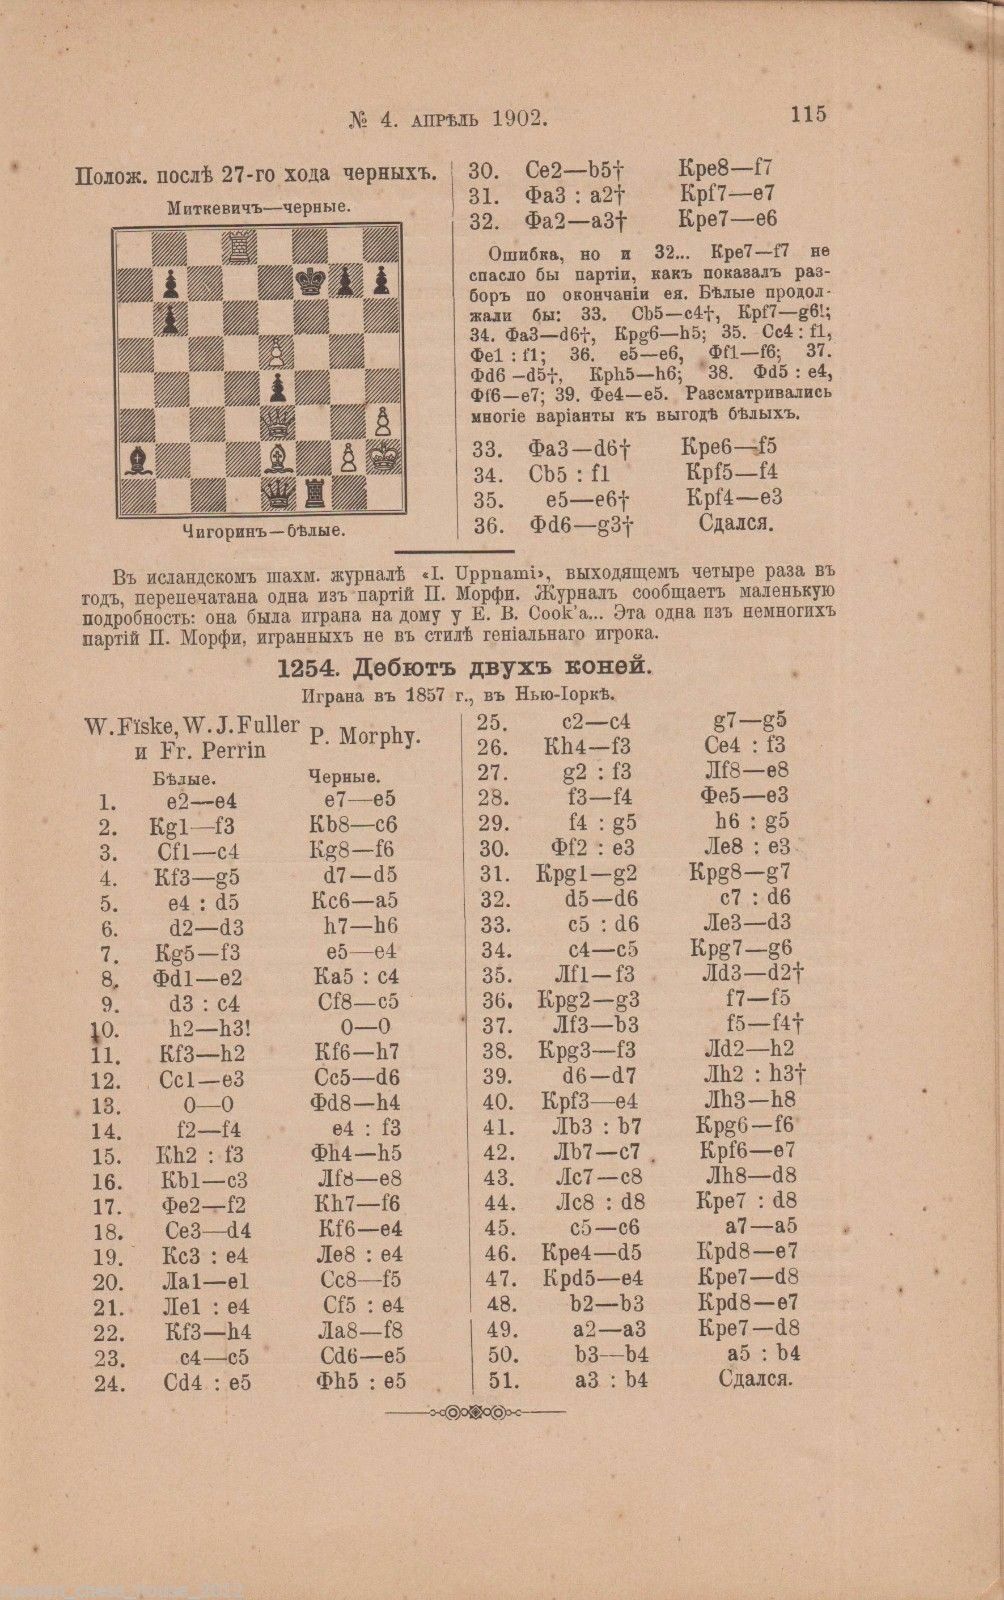 11511.Russian chess book: Chess magazine. No.4. 1902. St.-Petersburg